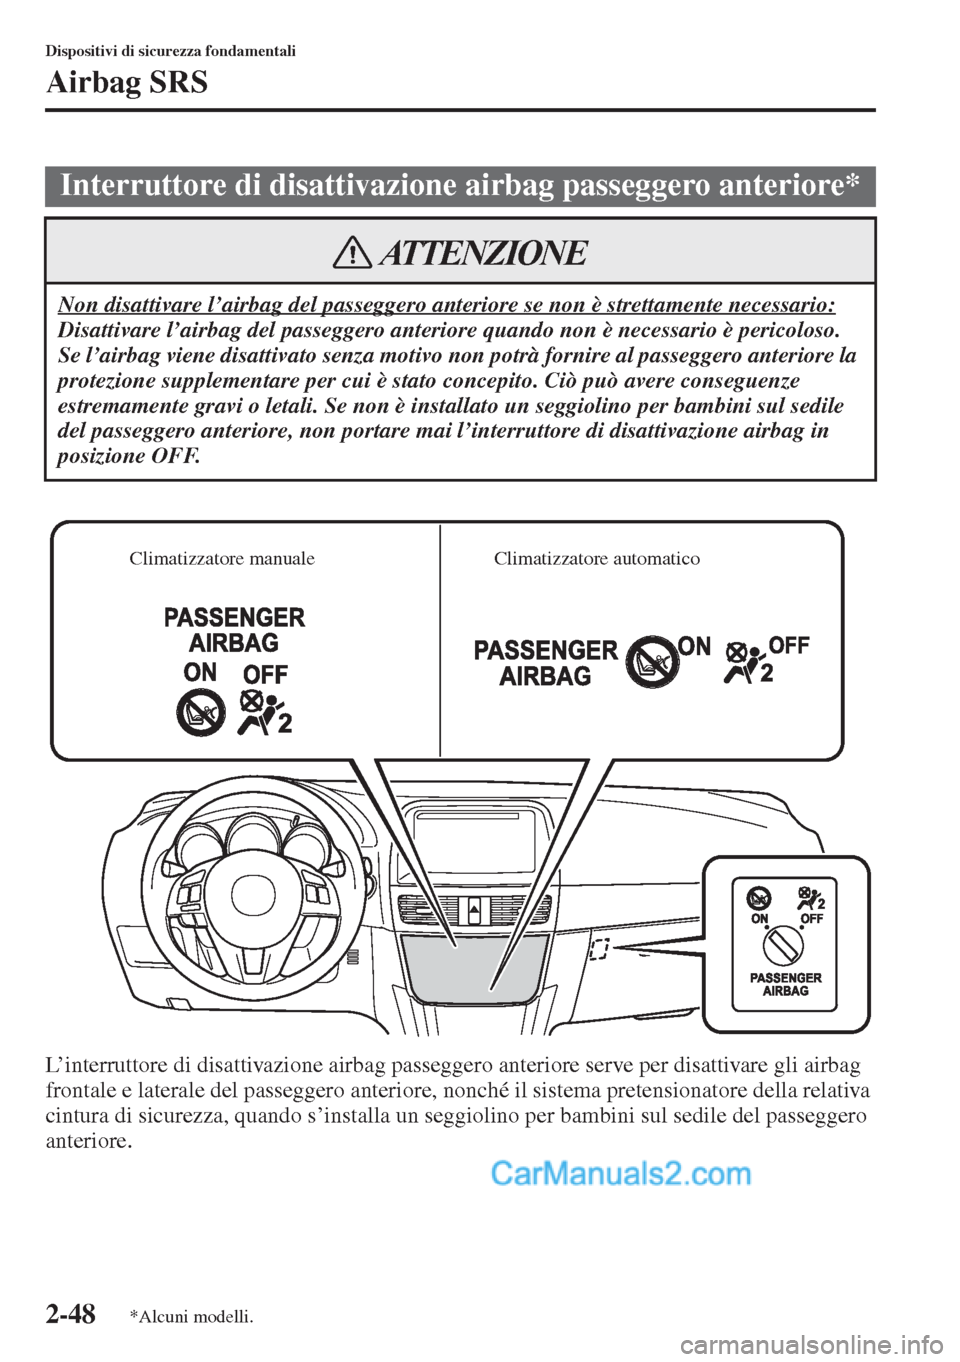 MAZDA MODEL CX-5 2015  Manuale del proprietario (in Italian) 2-48
Dispositivi di sicurezza fondamentali
Airbag SRS
L’interruttore di disattivazione airbag passeggero anteriore serve per disattivare gli airbag 
frontale e laterale del passeggero anteriore, non